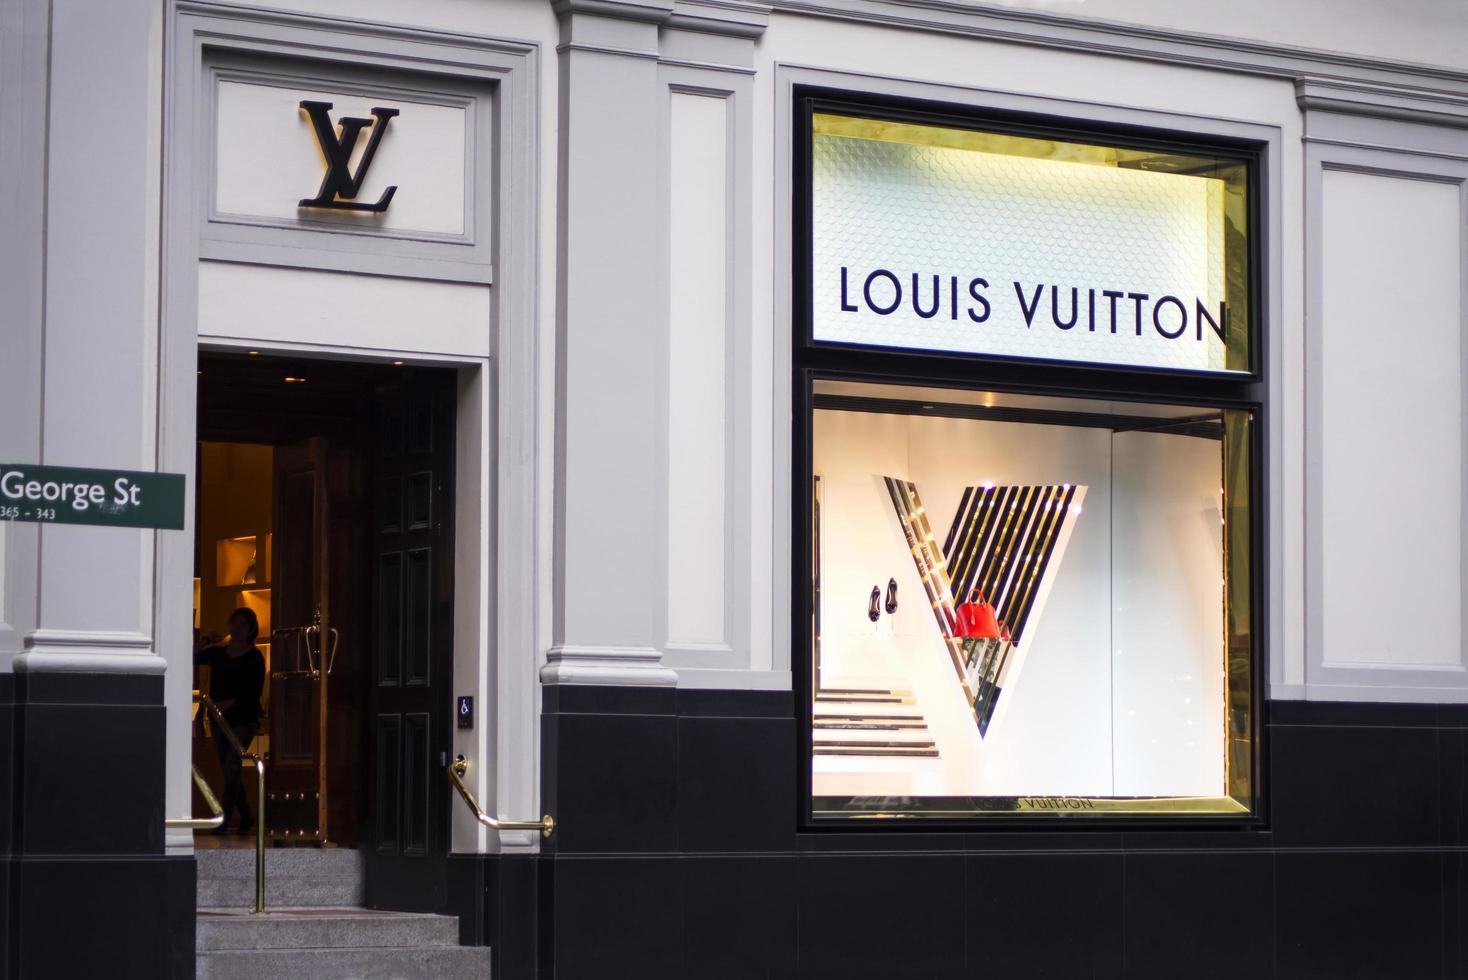 Sydney, Australië, 9 februari 2015 - kijk op de Louis Vuitton-winkel in Sydney, Australië. louis vuitton is een frans modehuis opgericht in 1854 en een van 's werelds toonaangevende internationale modehuizen. foto